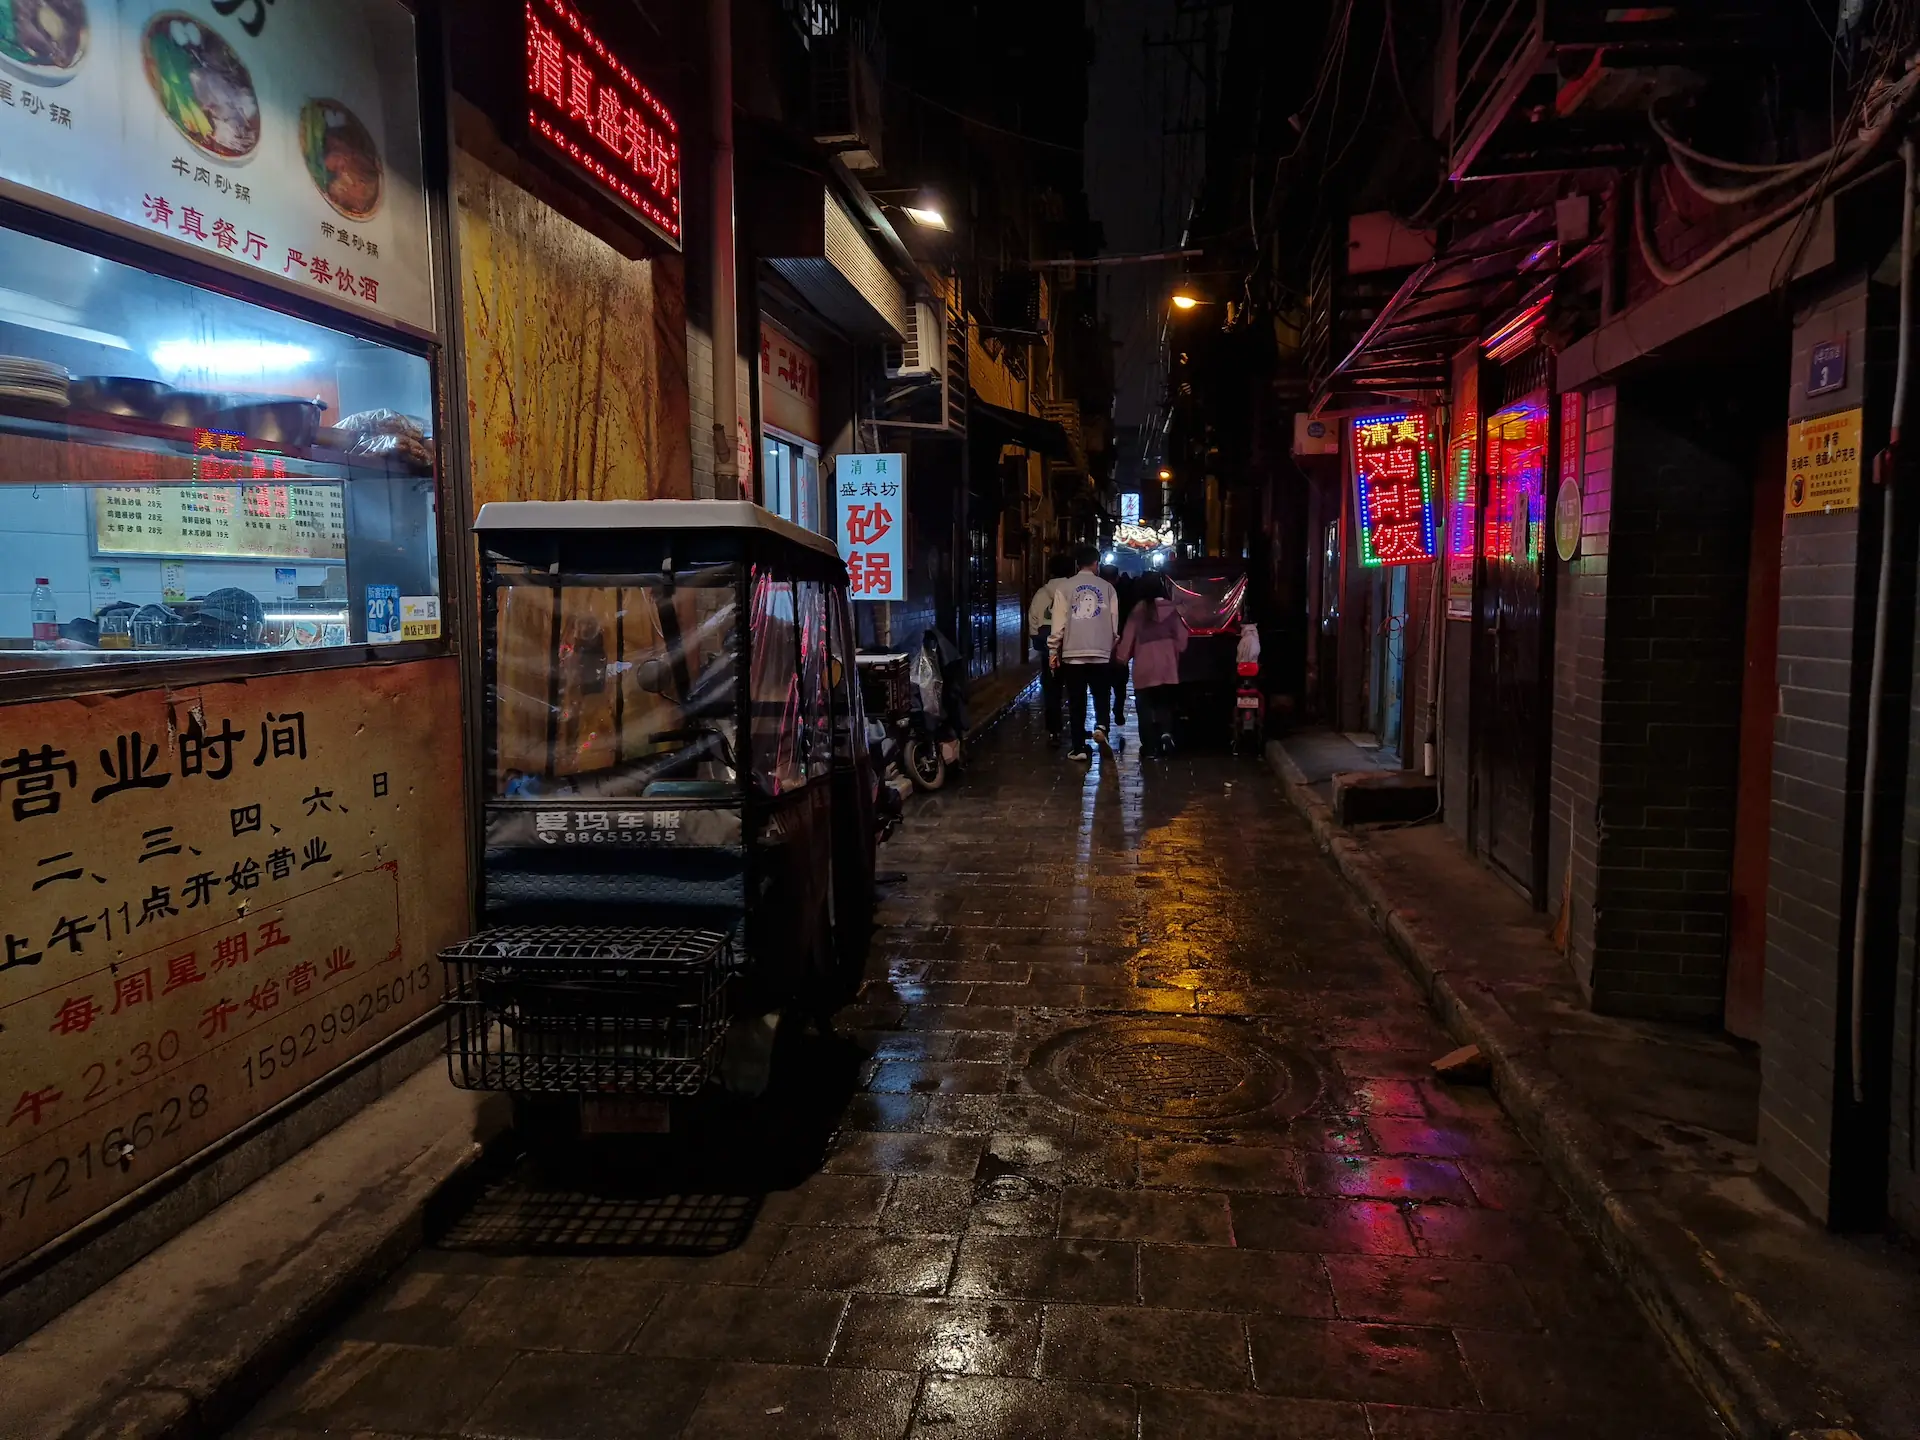 Une ruelle sombre presque déserte après la pluie, où les signes colorés se reflètent sur les pavés mouillés